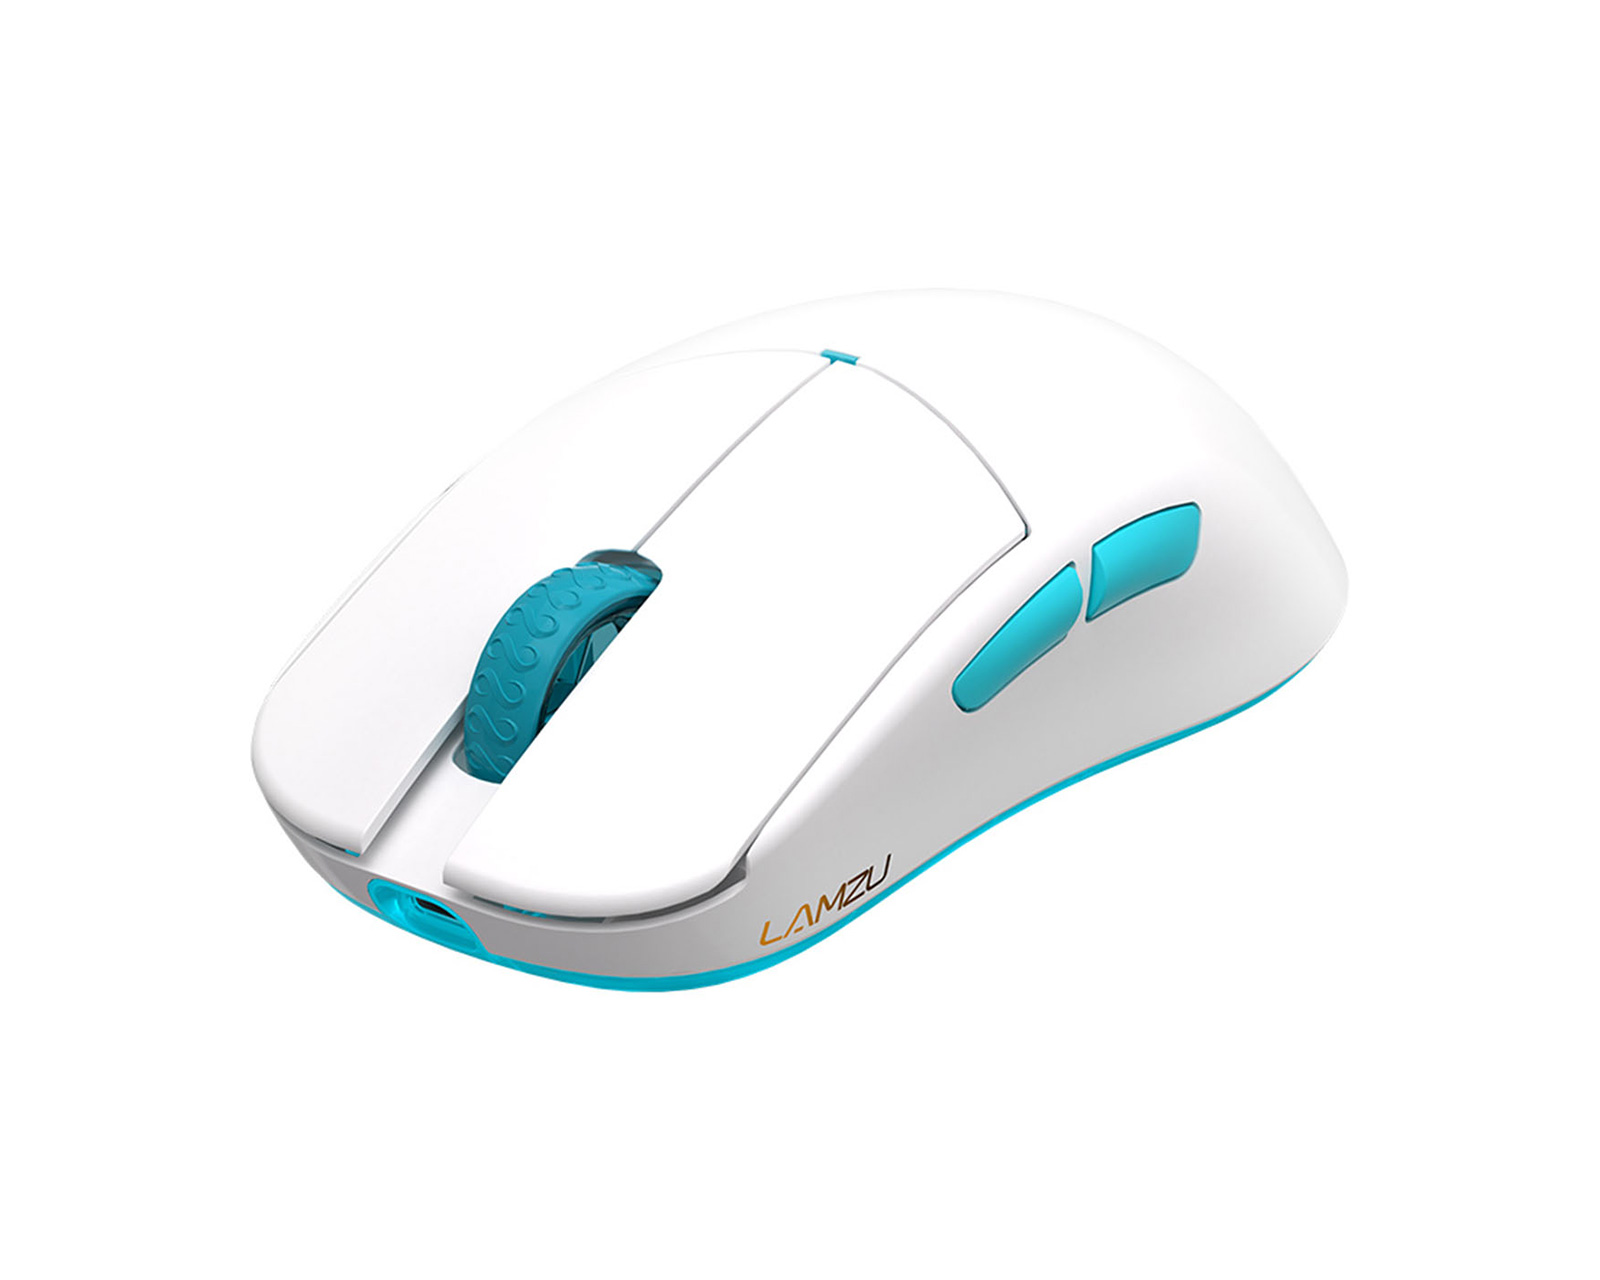 Lamzu Atlantis OG V2 Wireless Superlight Gaming Mouse - White - us